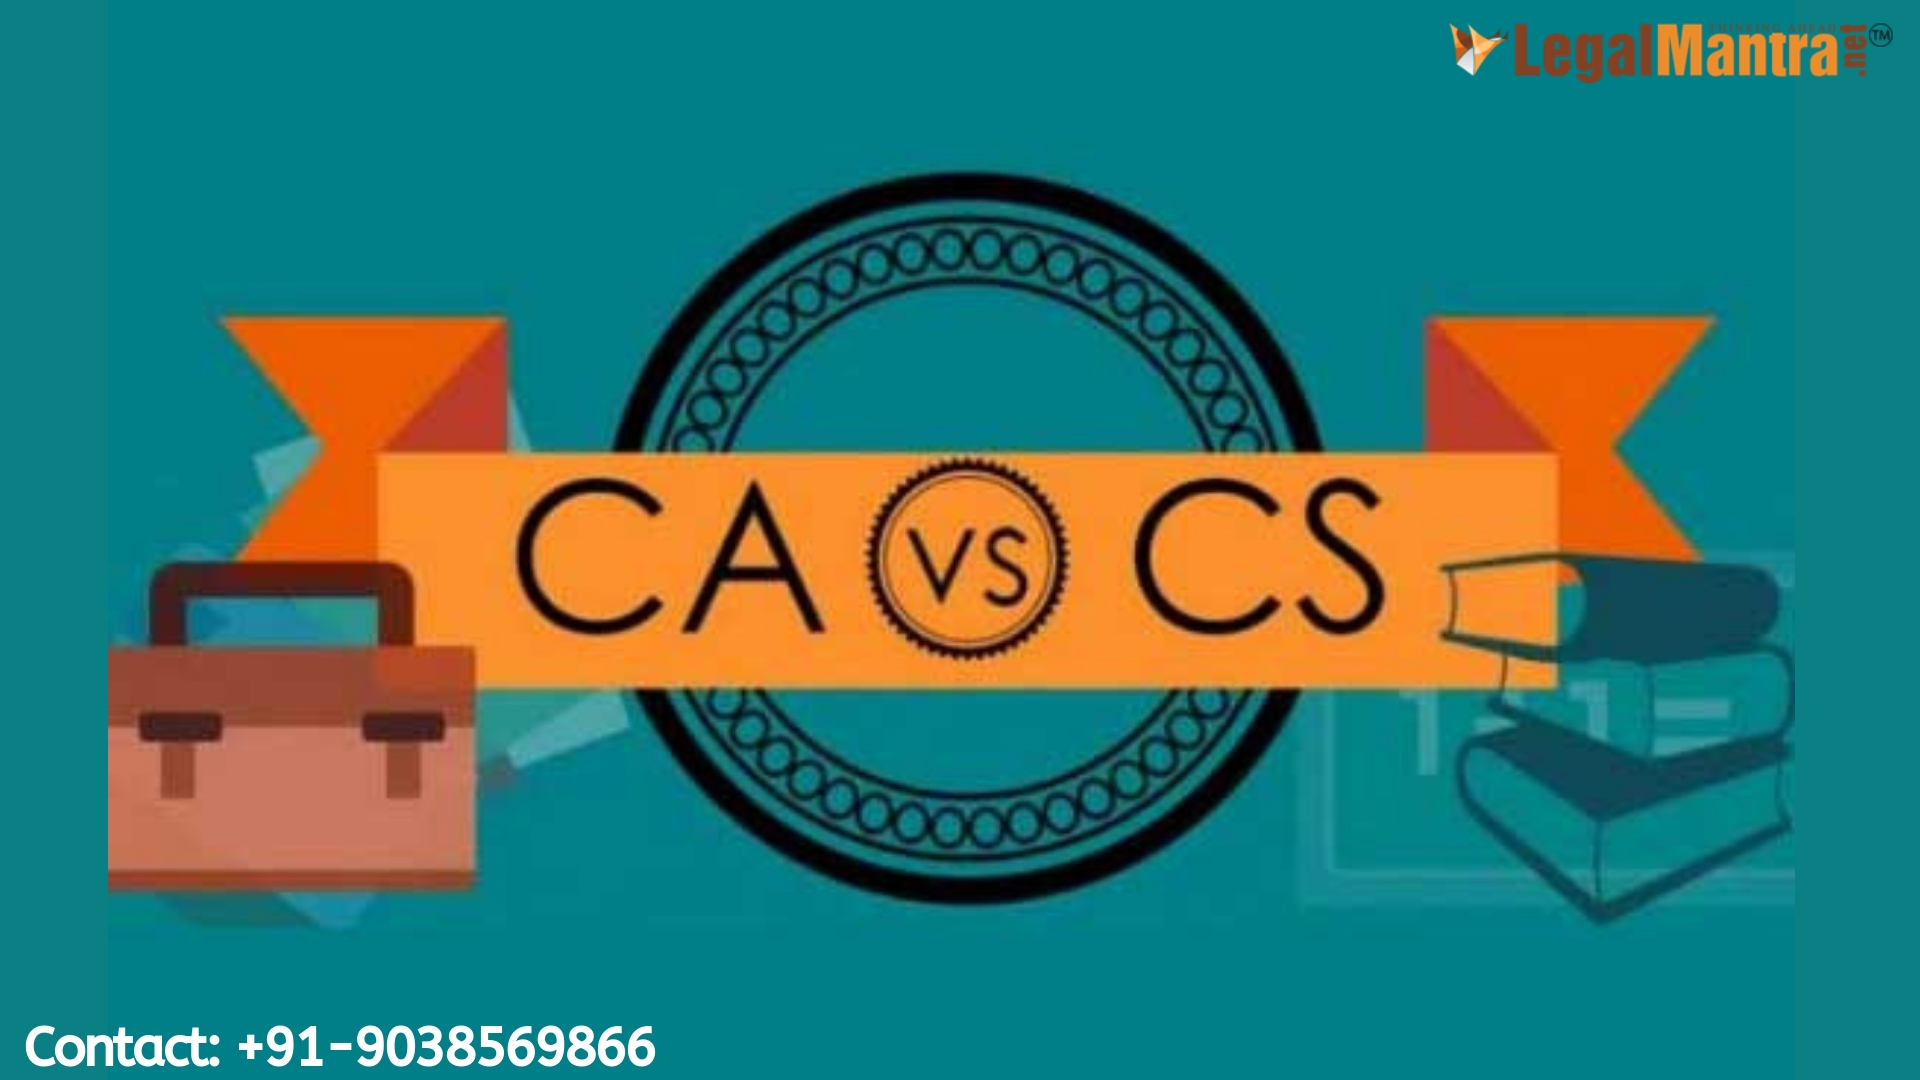 Chartered Accountant (CA) vs Company Secretary (CS)